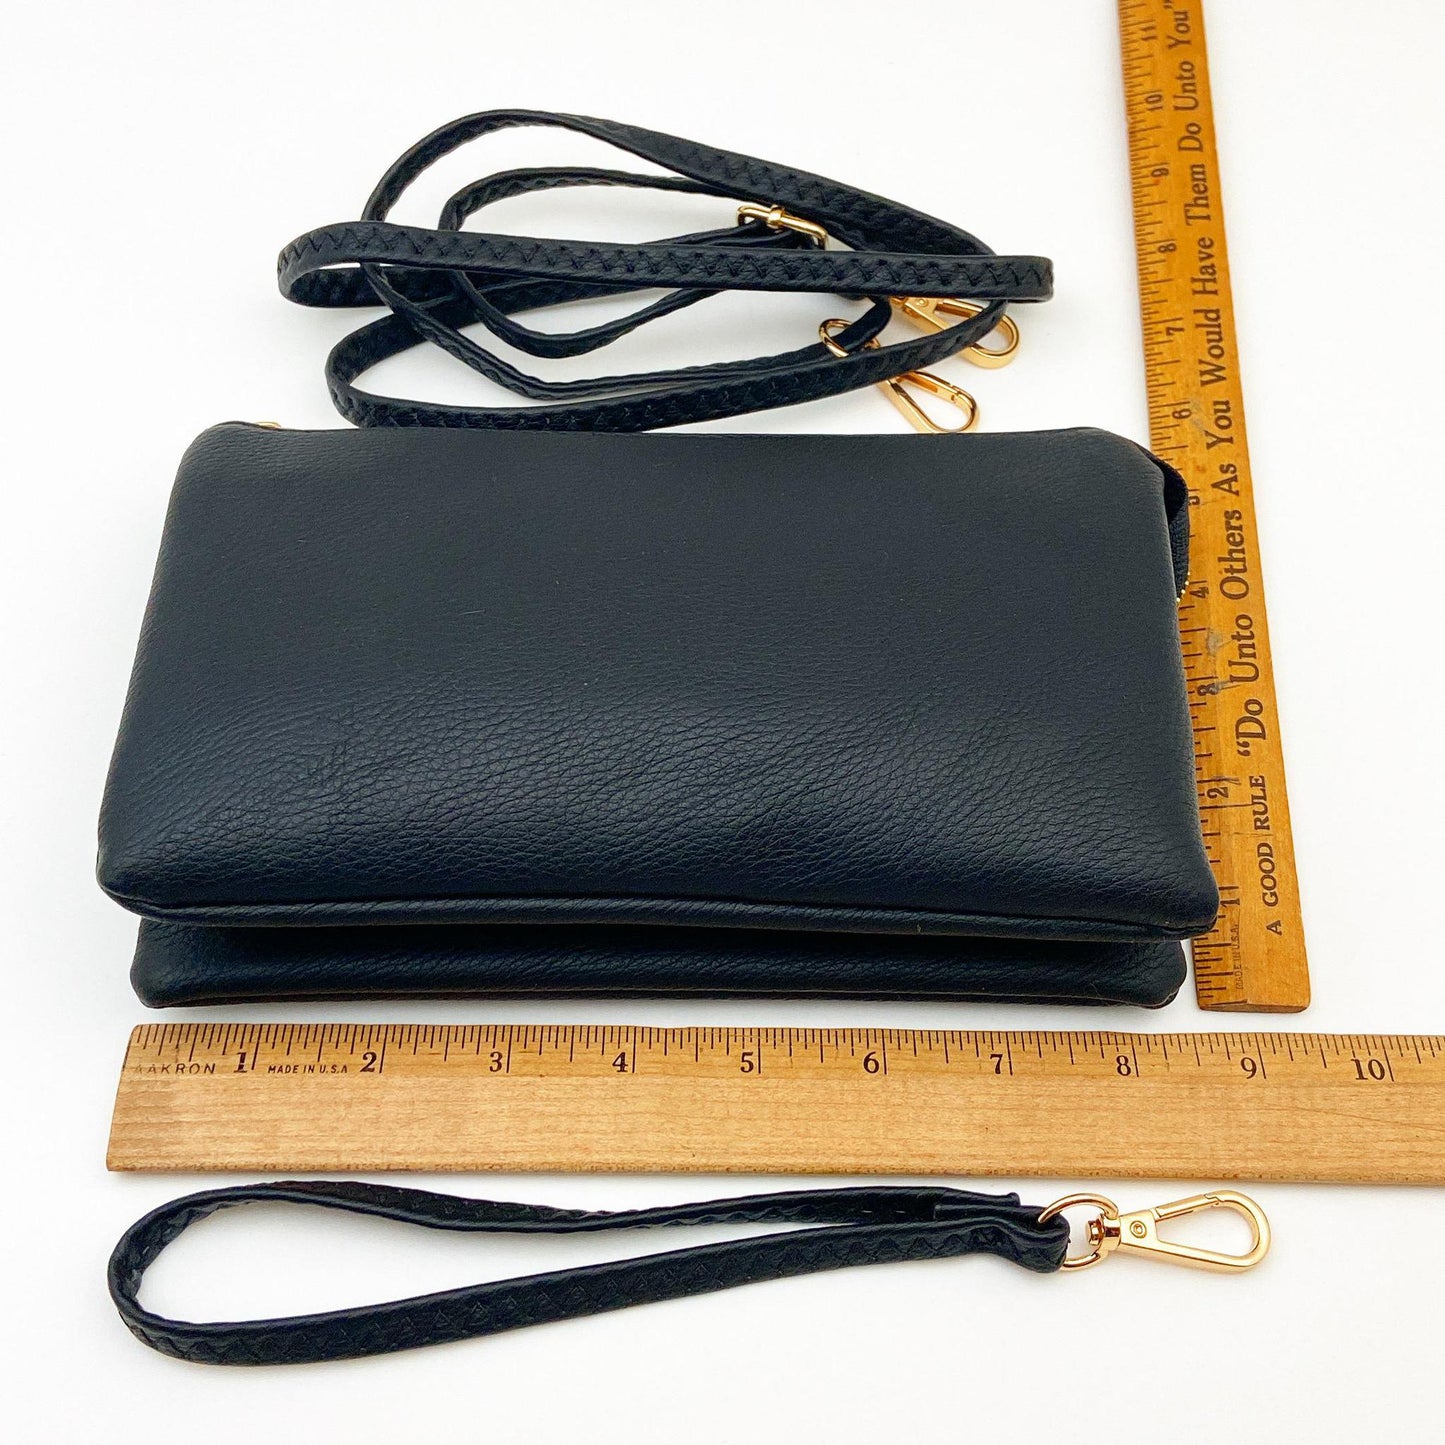 4 in 1 Handbag - Crossbody/Clutch/Wristlet - Royal Blue